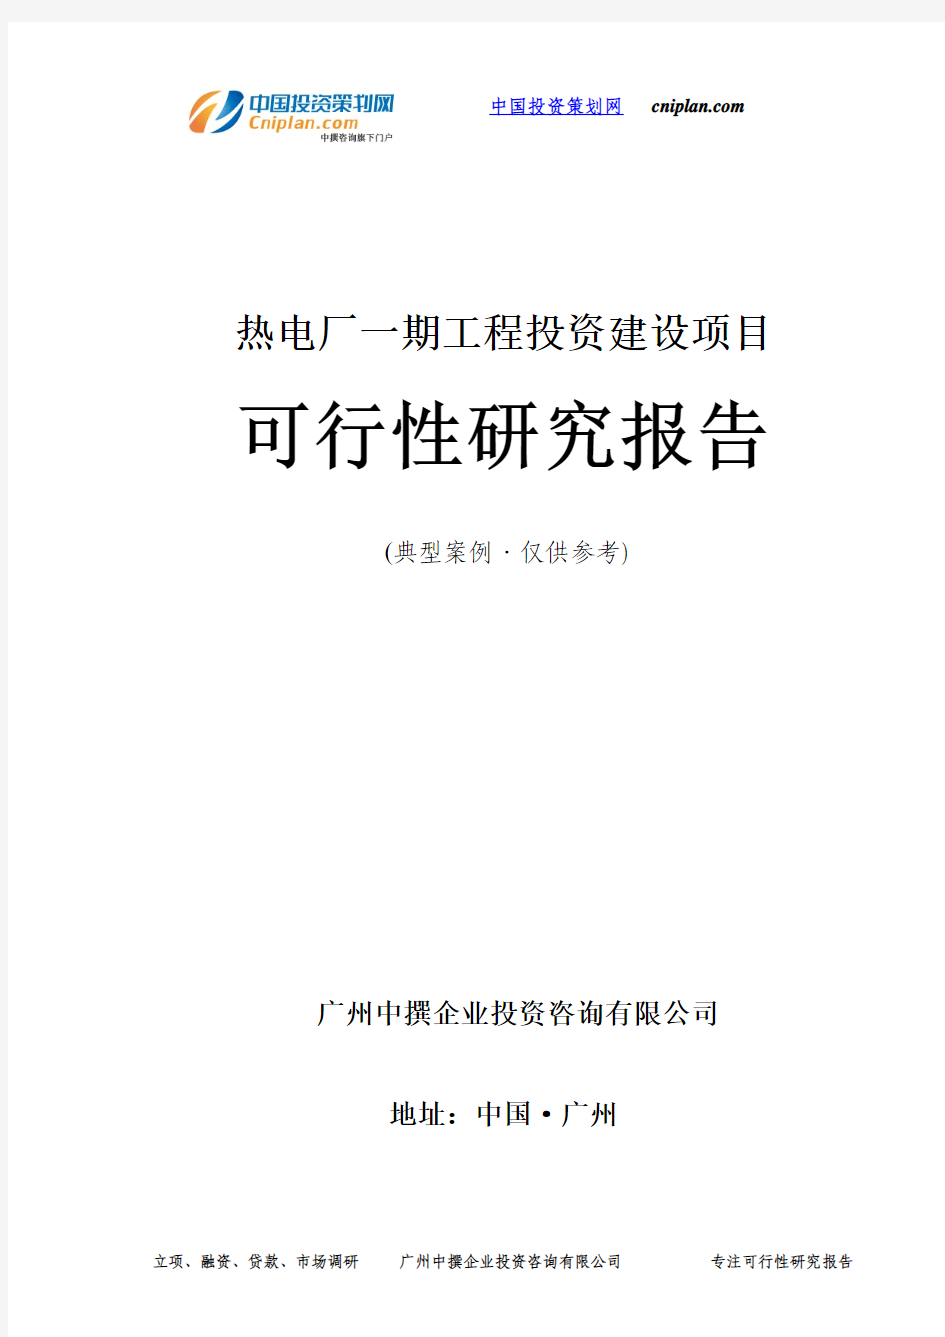 热电厂一期工程投资建设项目可行性研究报告-广州中撰咨询